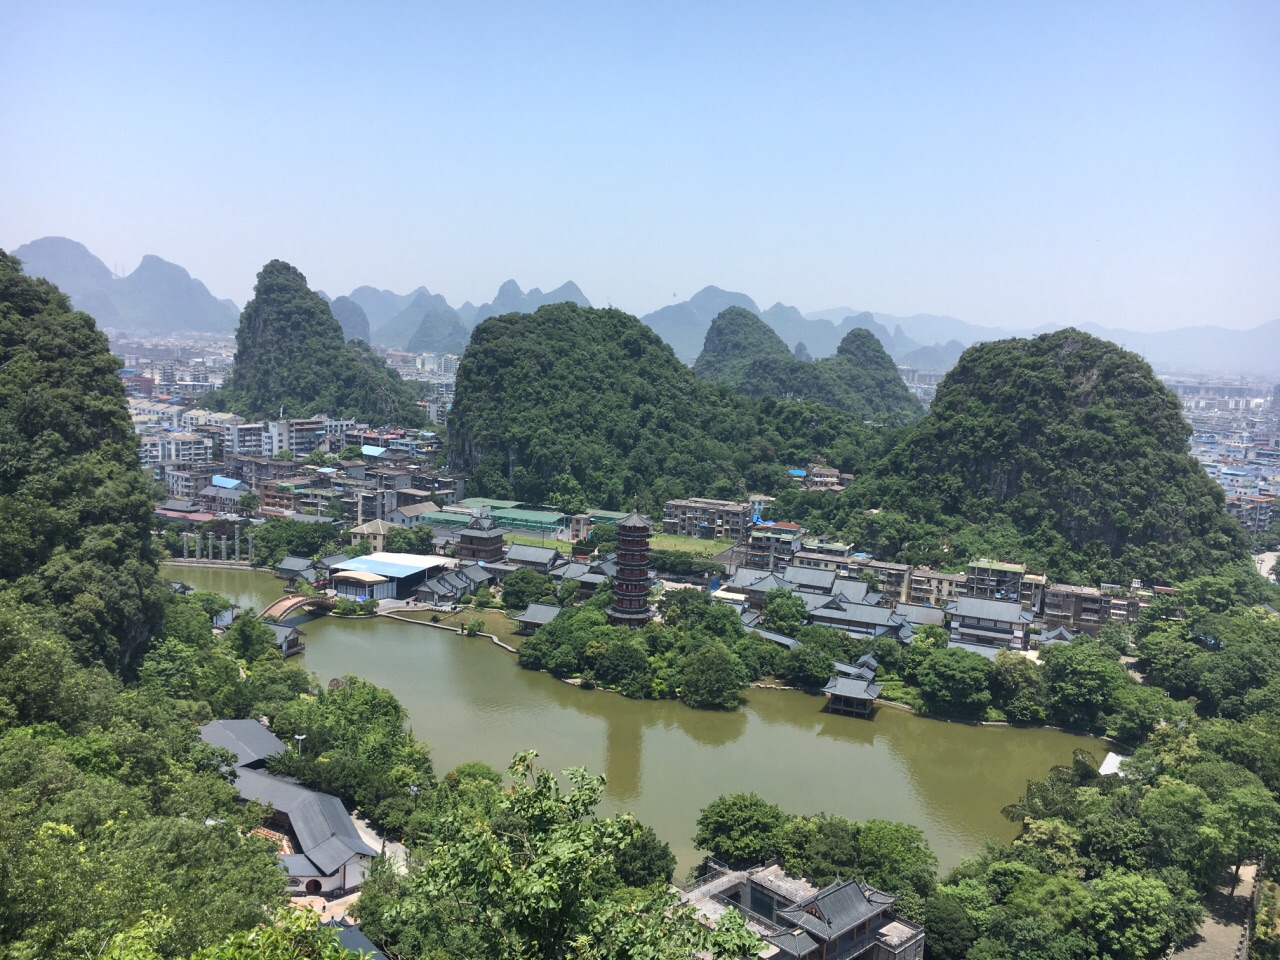 【携程攻略】桂林叠彩山景点,山顶看整个桂林市,很宽阔风景很美,其他